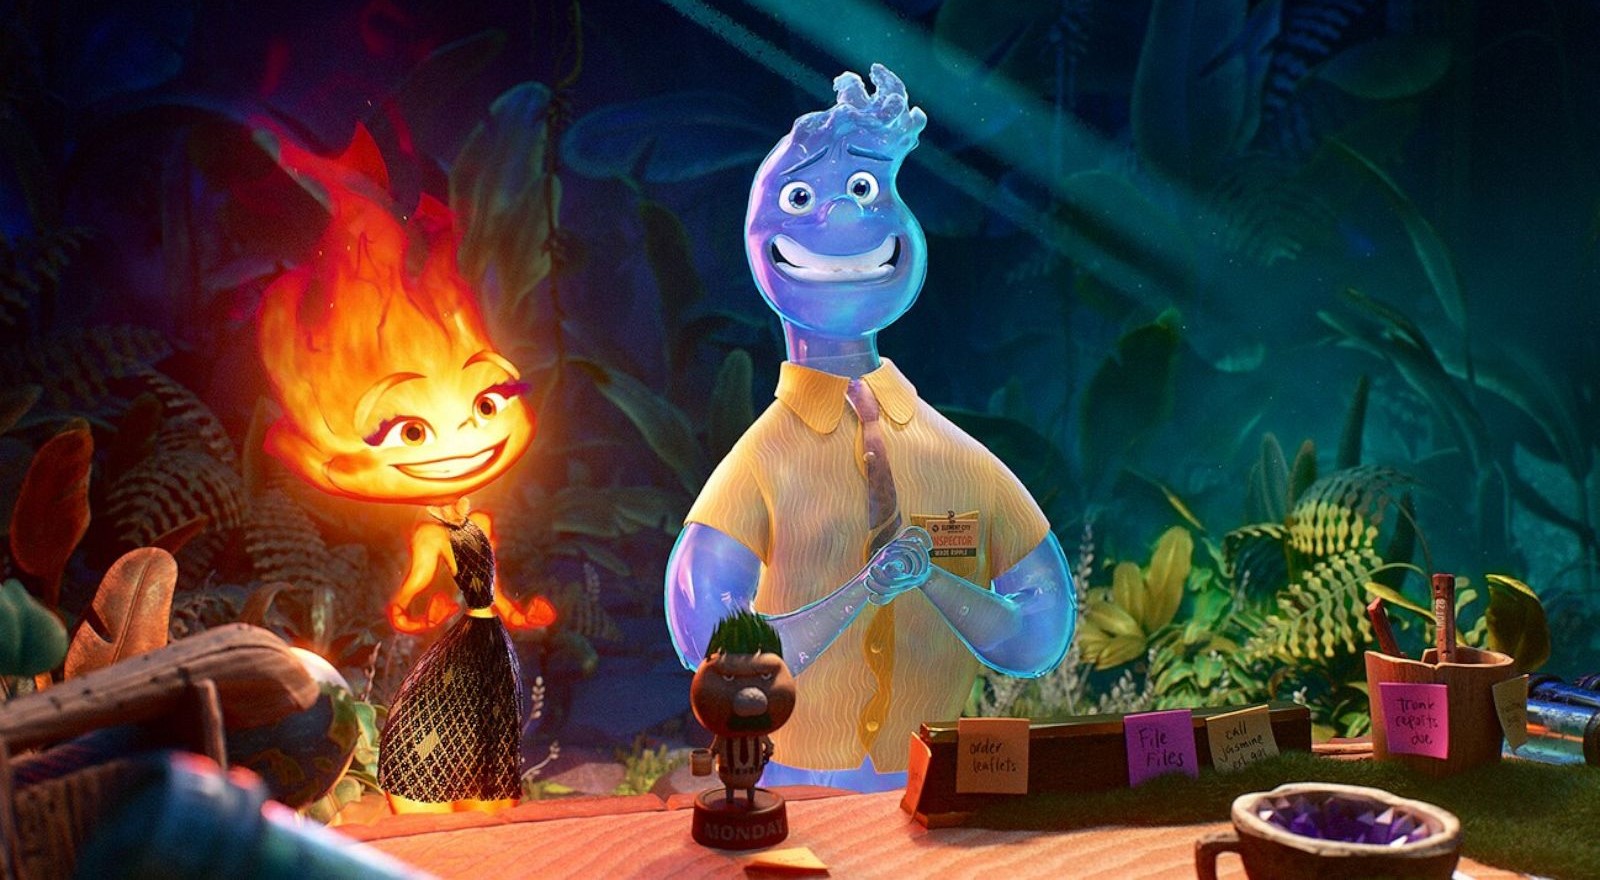 #Elemental: Disney+-Starttermin des neusten Pixar-Animationsfilms steht